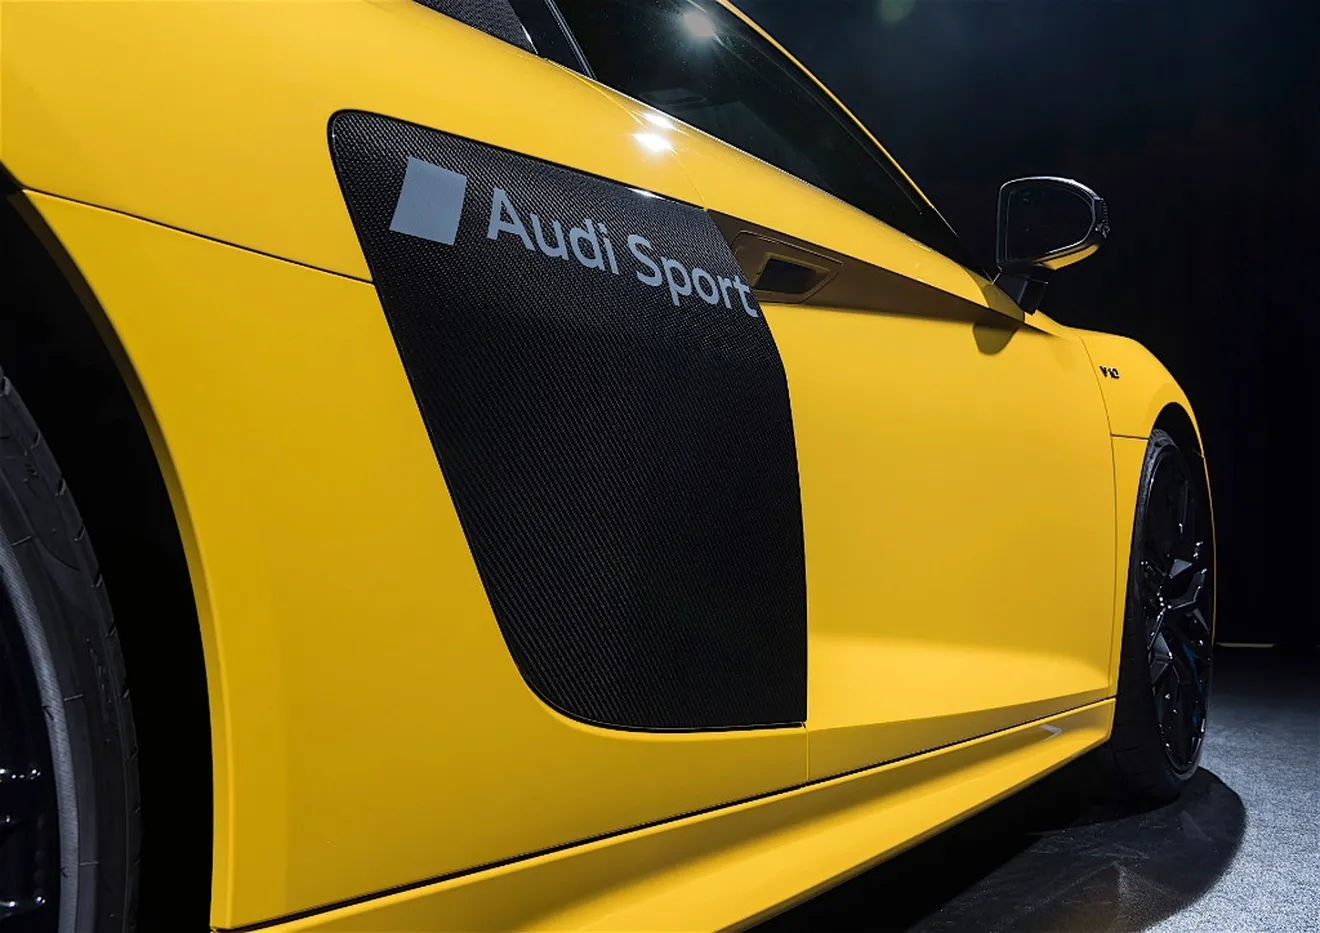 Nuevo proceso de pintura de Audi que permite dar un acabado mate parcial